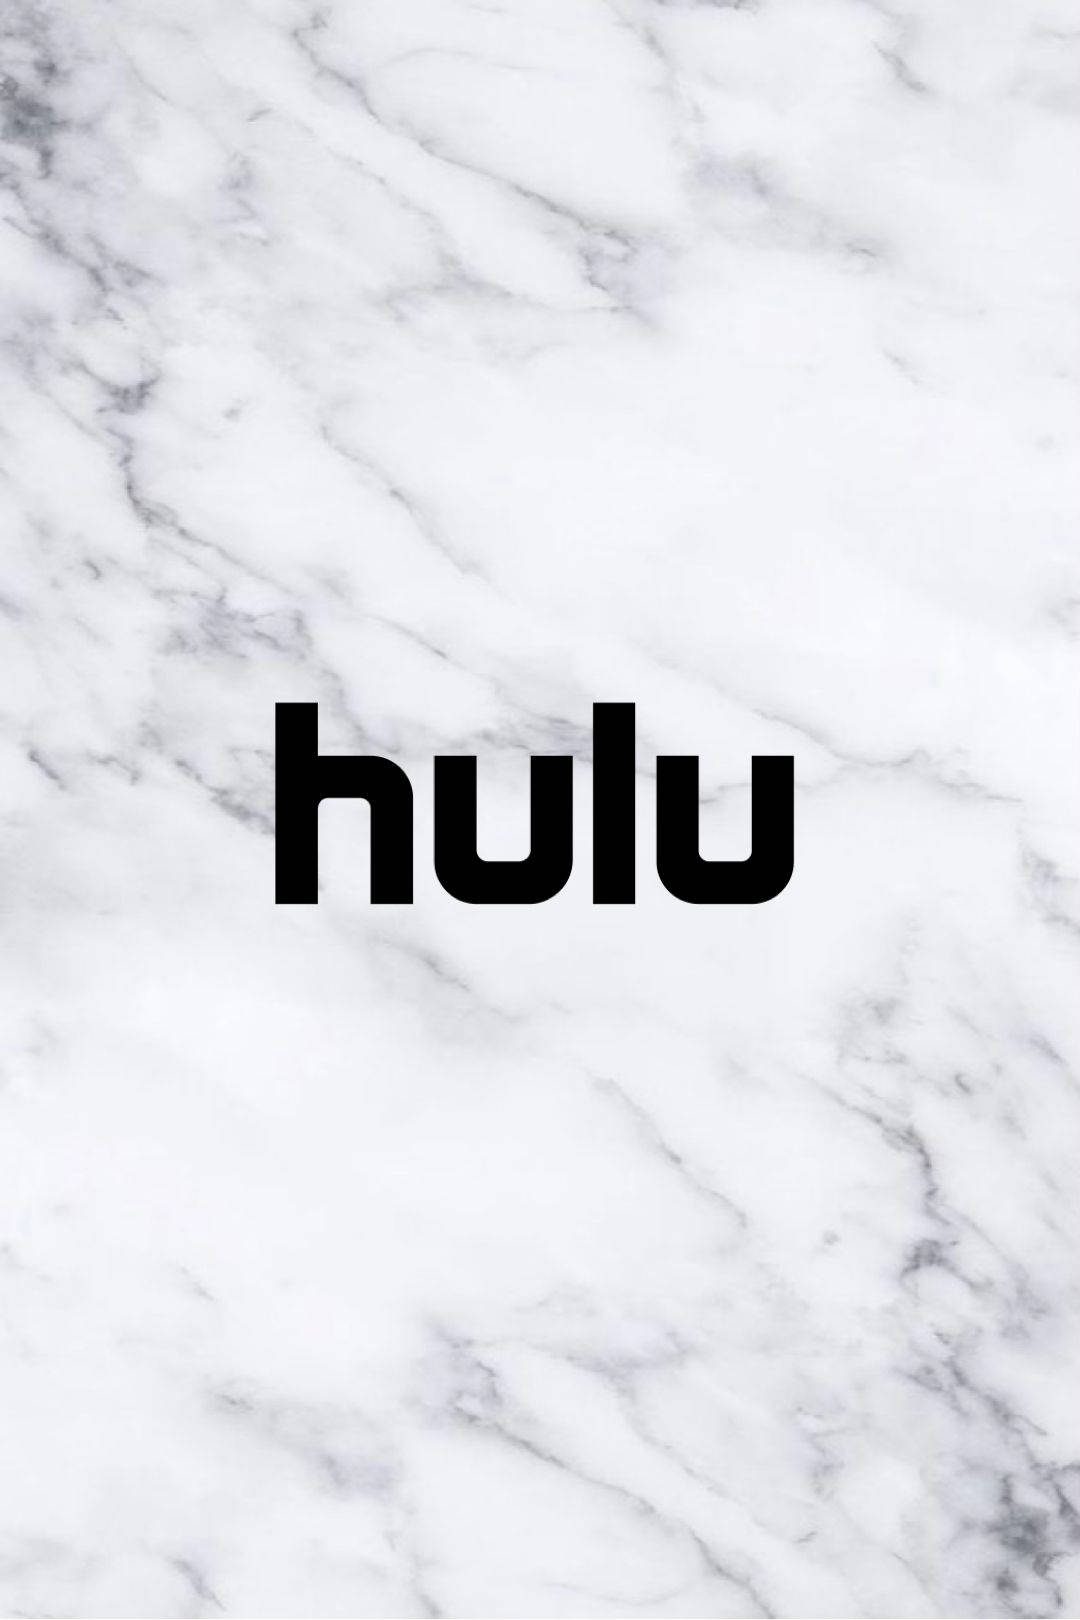 Hulu In Marble